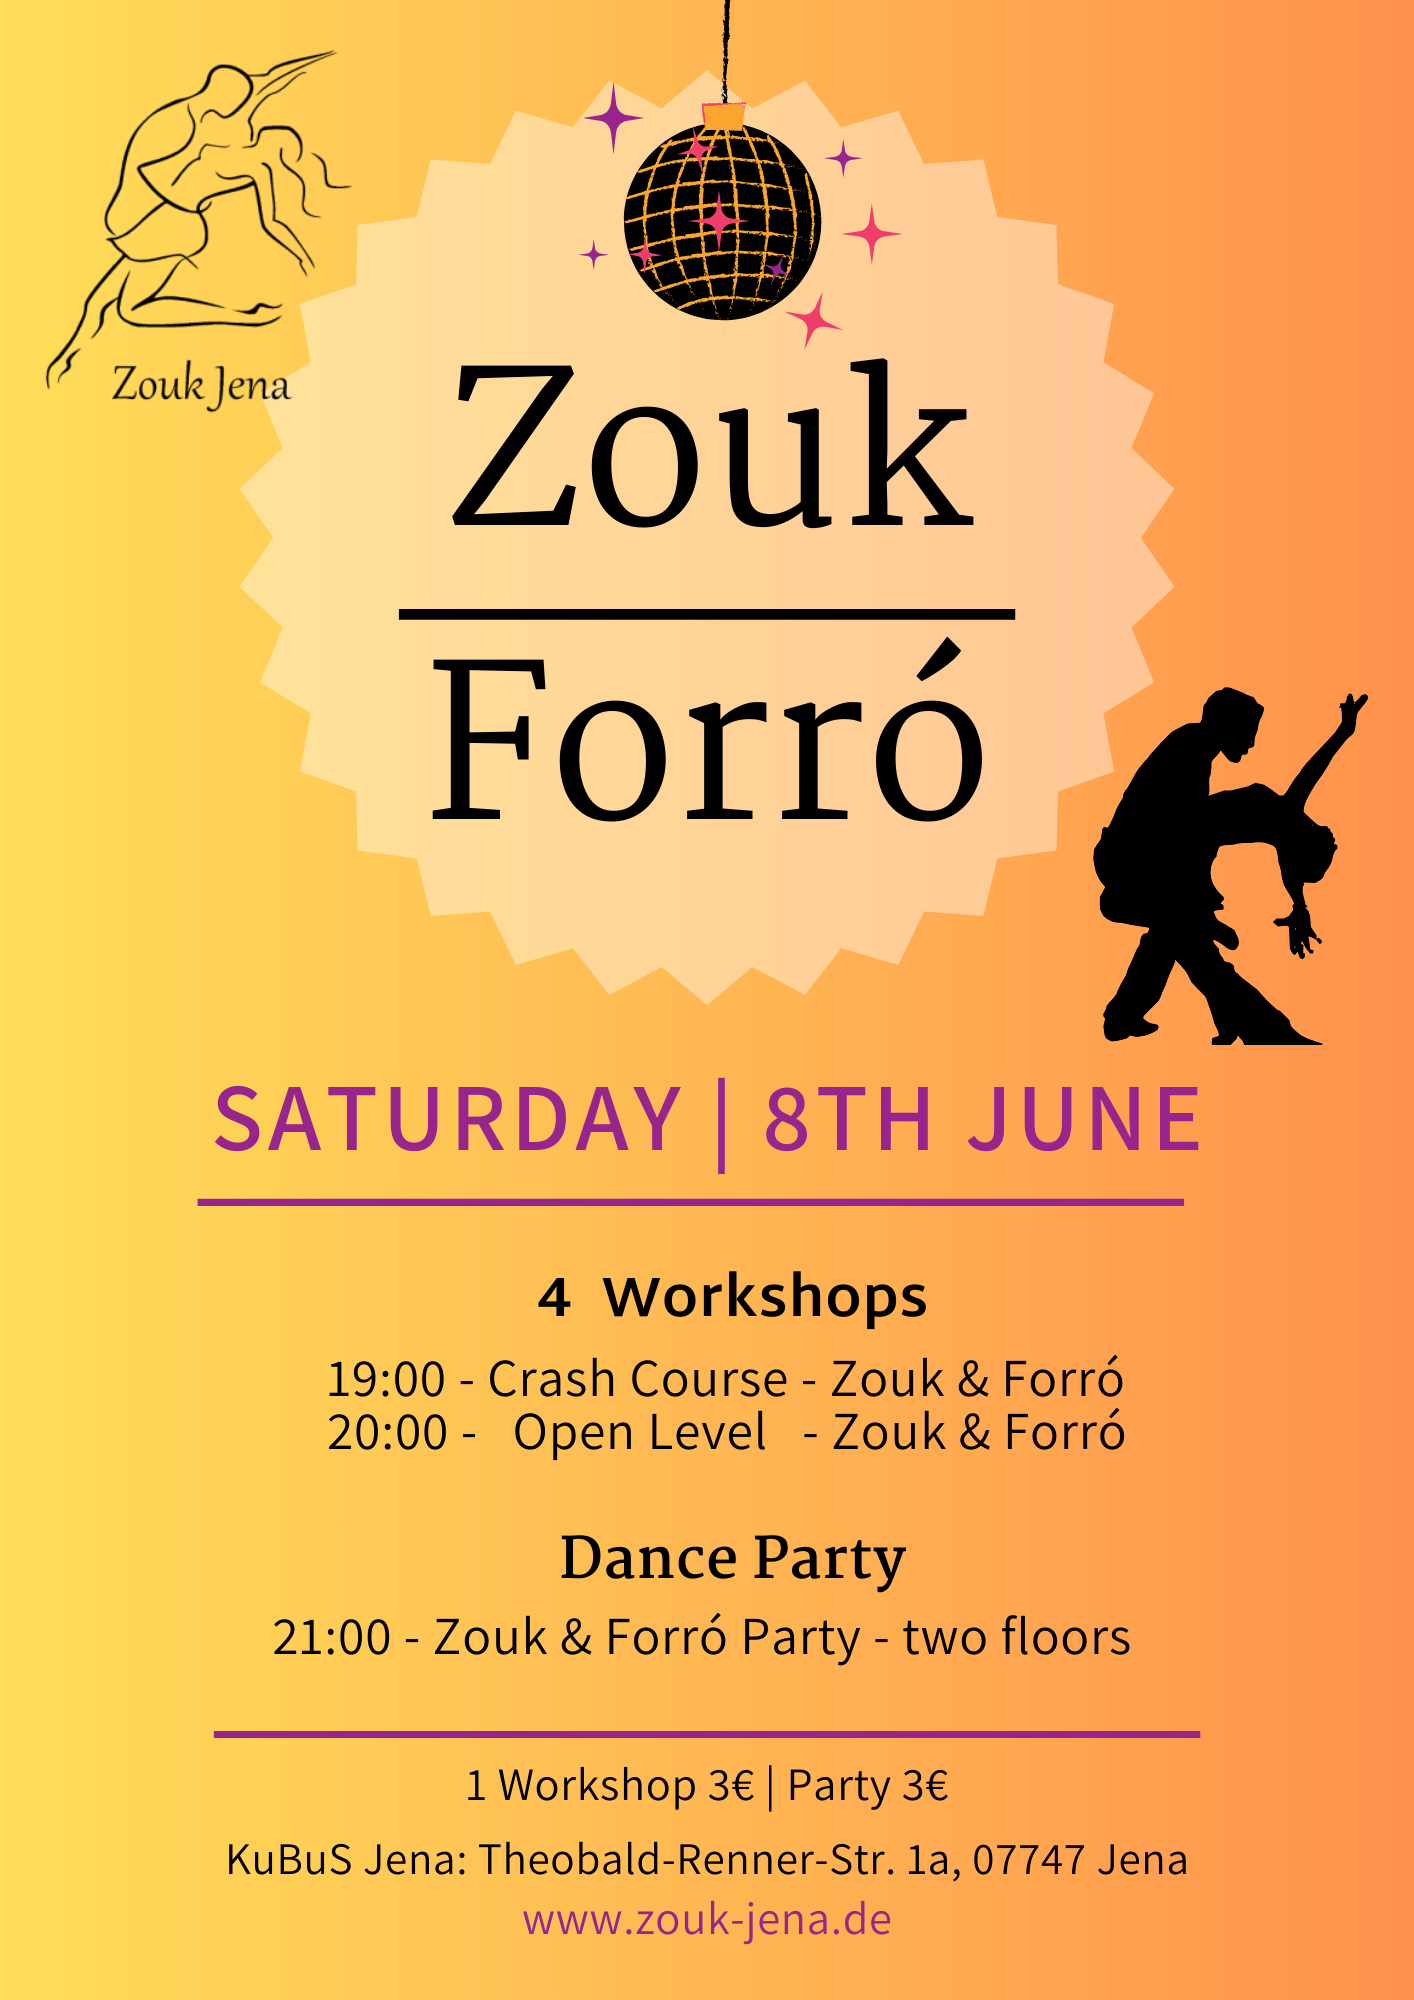 Zouk & Forró (2 Floors)